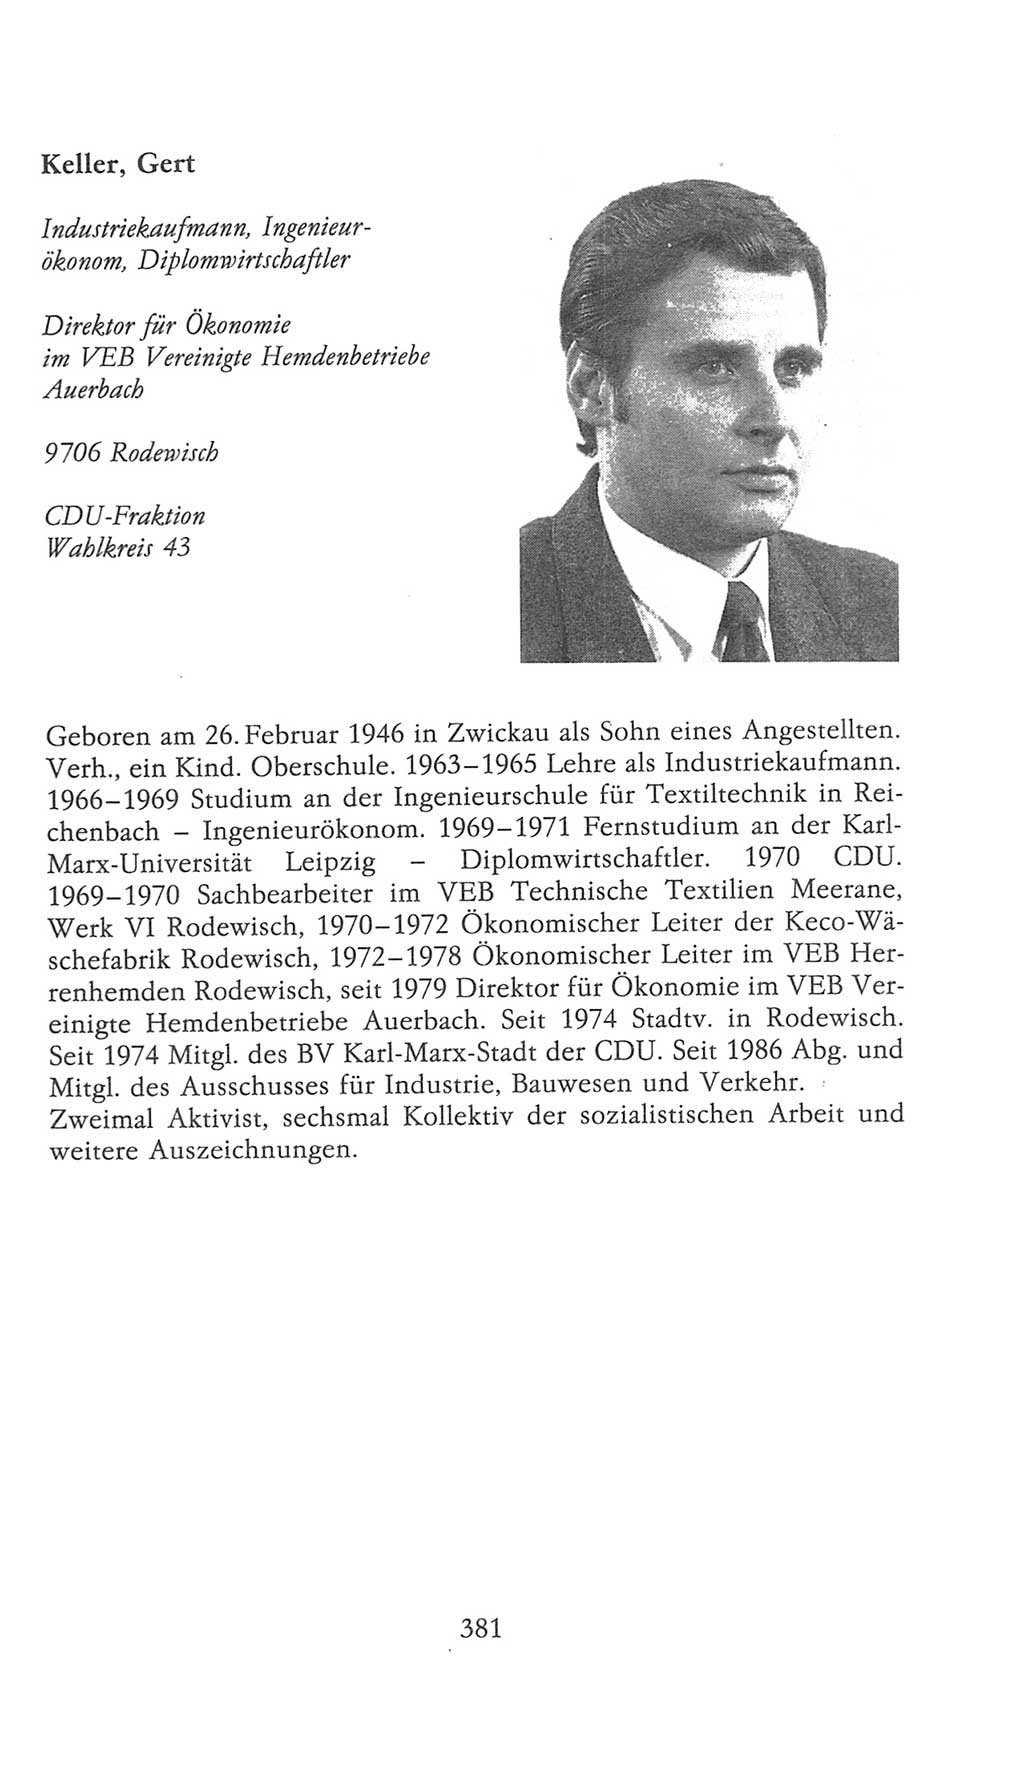 Volkskammer (VK) der Deutschen Demokratischen Republik (DDR), 9. Wahlperiode 1986-1990, Seite 381 (VK. DDR 9. WP. 1986-1990, S. 381)